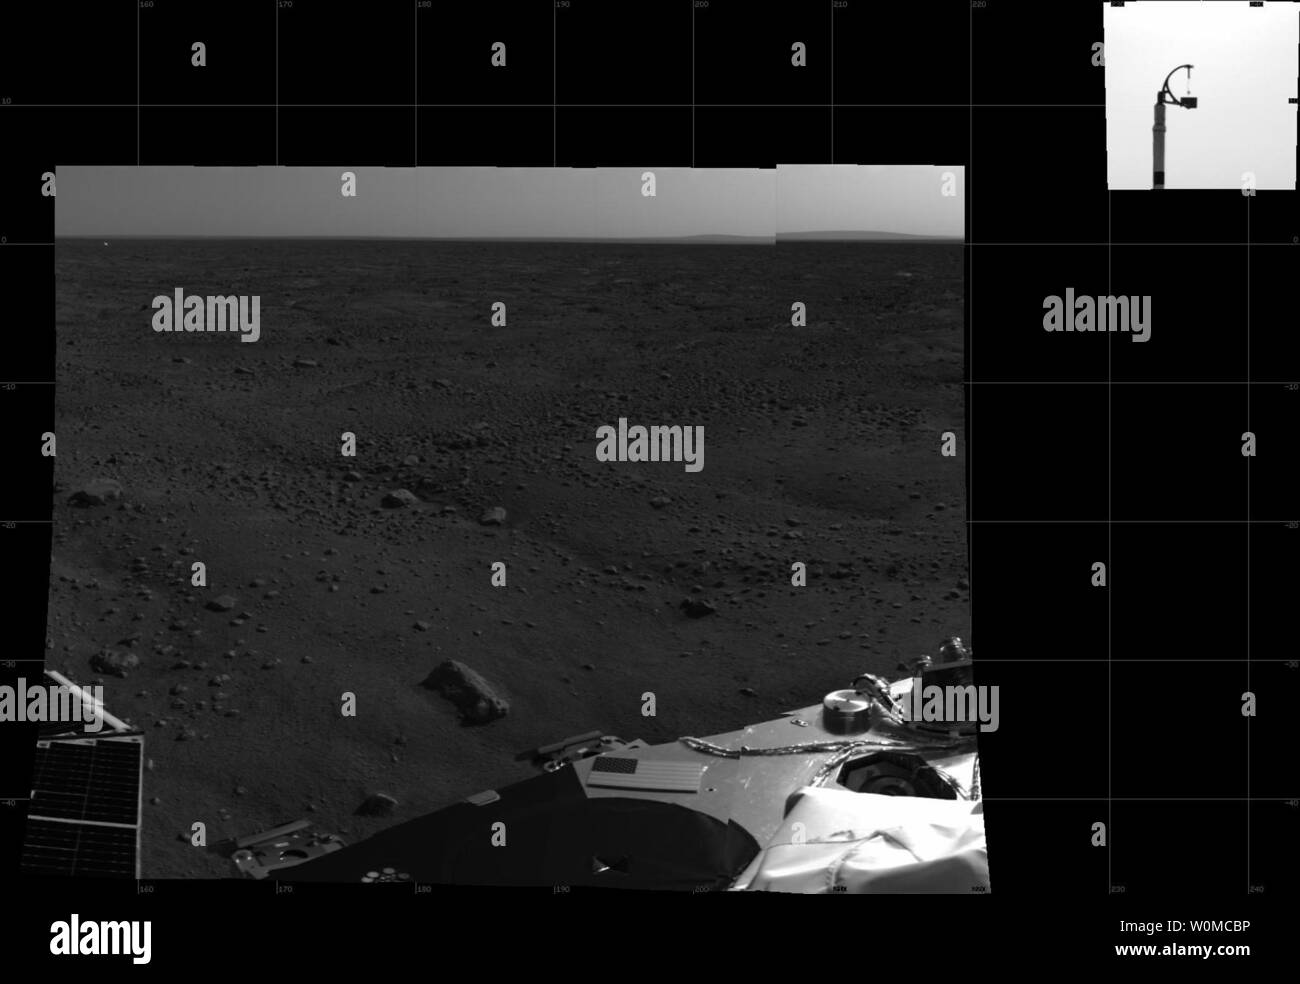 Neue Daten zurück strahlte von Phoenix am 26. Mai 2008 zeigen, dass es sich bei guter Gesundheit nach der ersten Nacht auf dem Mars. NASA's Phoenix Mars Lander auf dem roten Planeten 4:53:00 Uhr pazifischer Zeit (7:53 Uhr Eastern Time), 25. Mai 2008, in der arktischen Region Vastitas Borealis, bei 68 Grad nördlicher Breite und 234 Grad östlicher Länge. Dies ist eine ungefähre-Farben Bild kurz nach der Landung mit der Außenfläche des Raumfahrzeugs Stereo Imager genommen. (UPI Foto/NASA/JPL-Caltech/Universität von Arizona / Texas A&M) Stockfoto